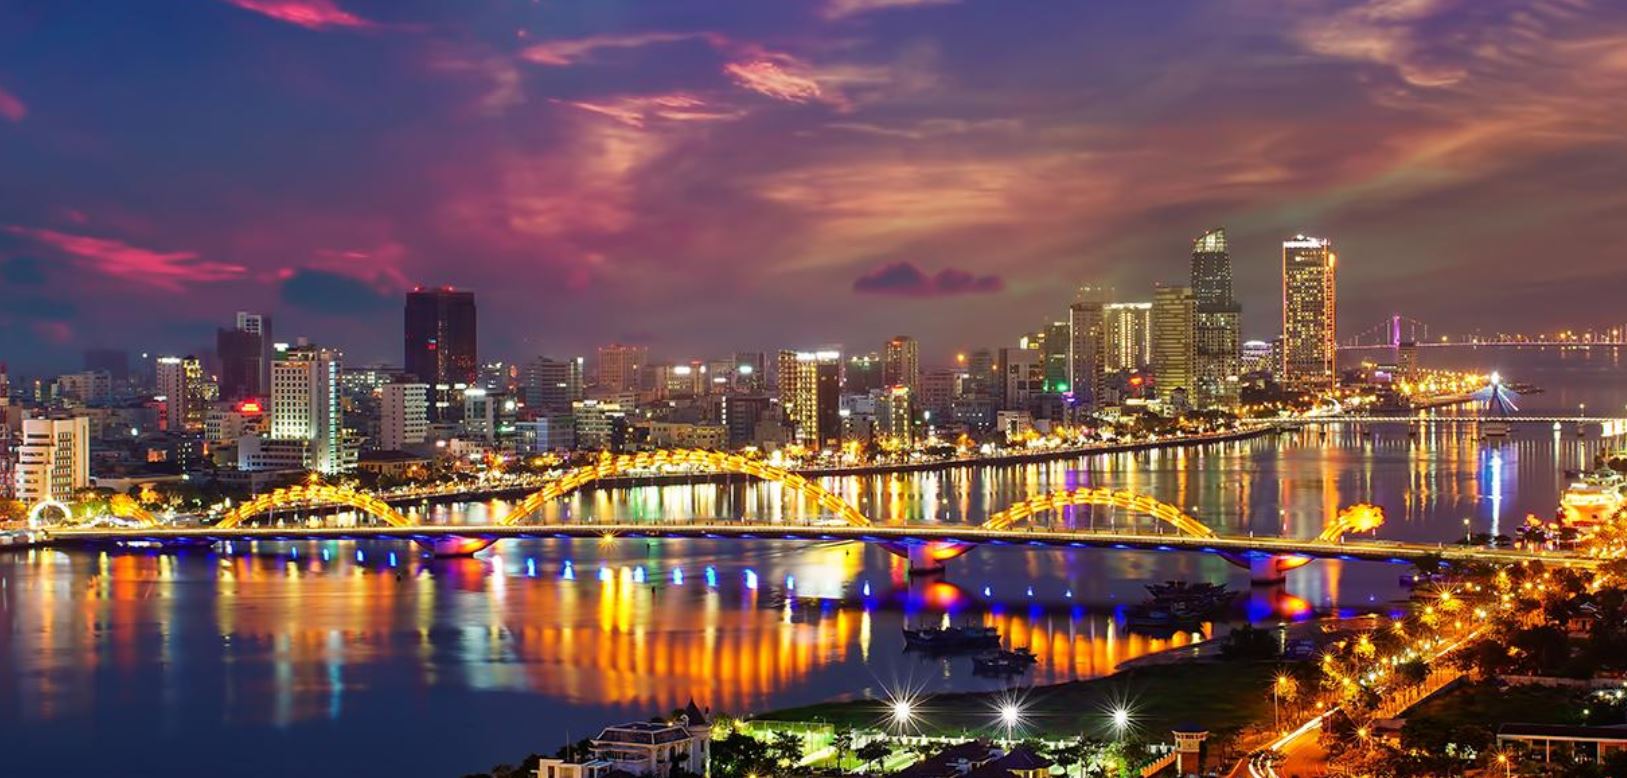 50 địa điểm du lịch Đà Nẵng hấp dẫn không thể bỏ qua